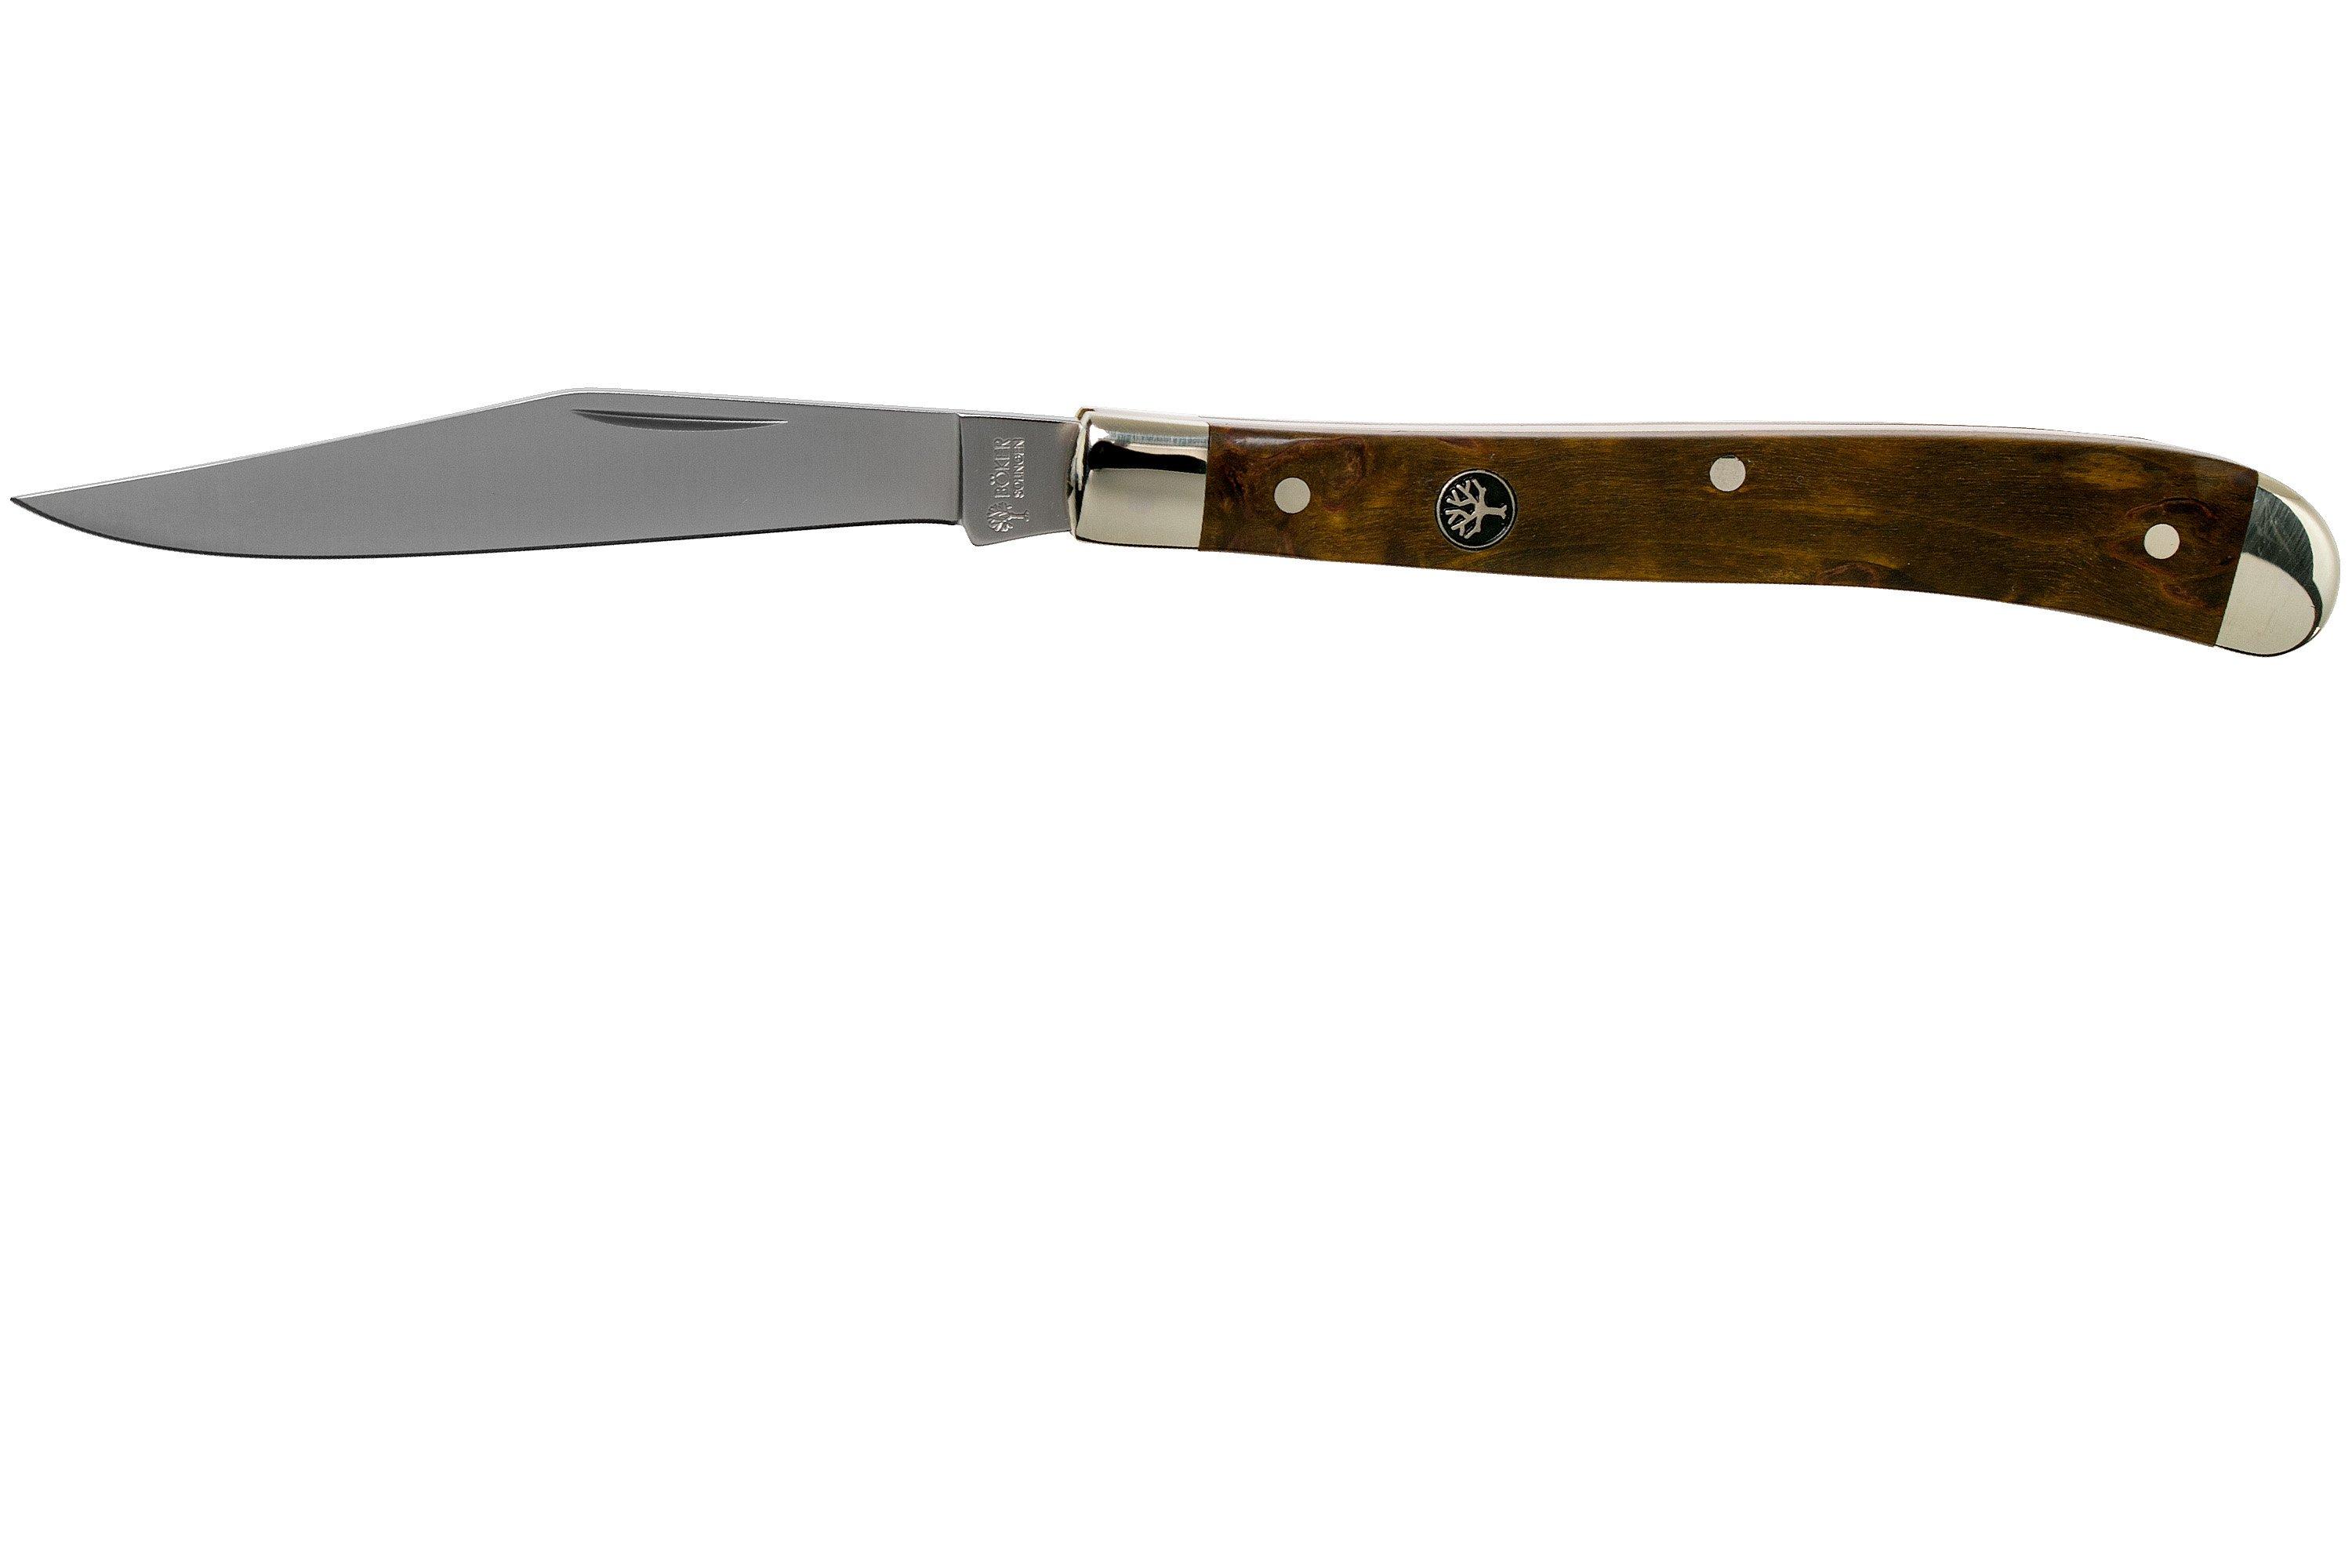 Böker Delicate Curly Birch 117016 pocket knife | Advantageously ...